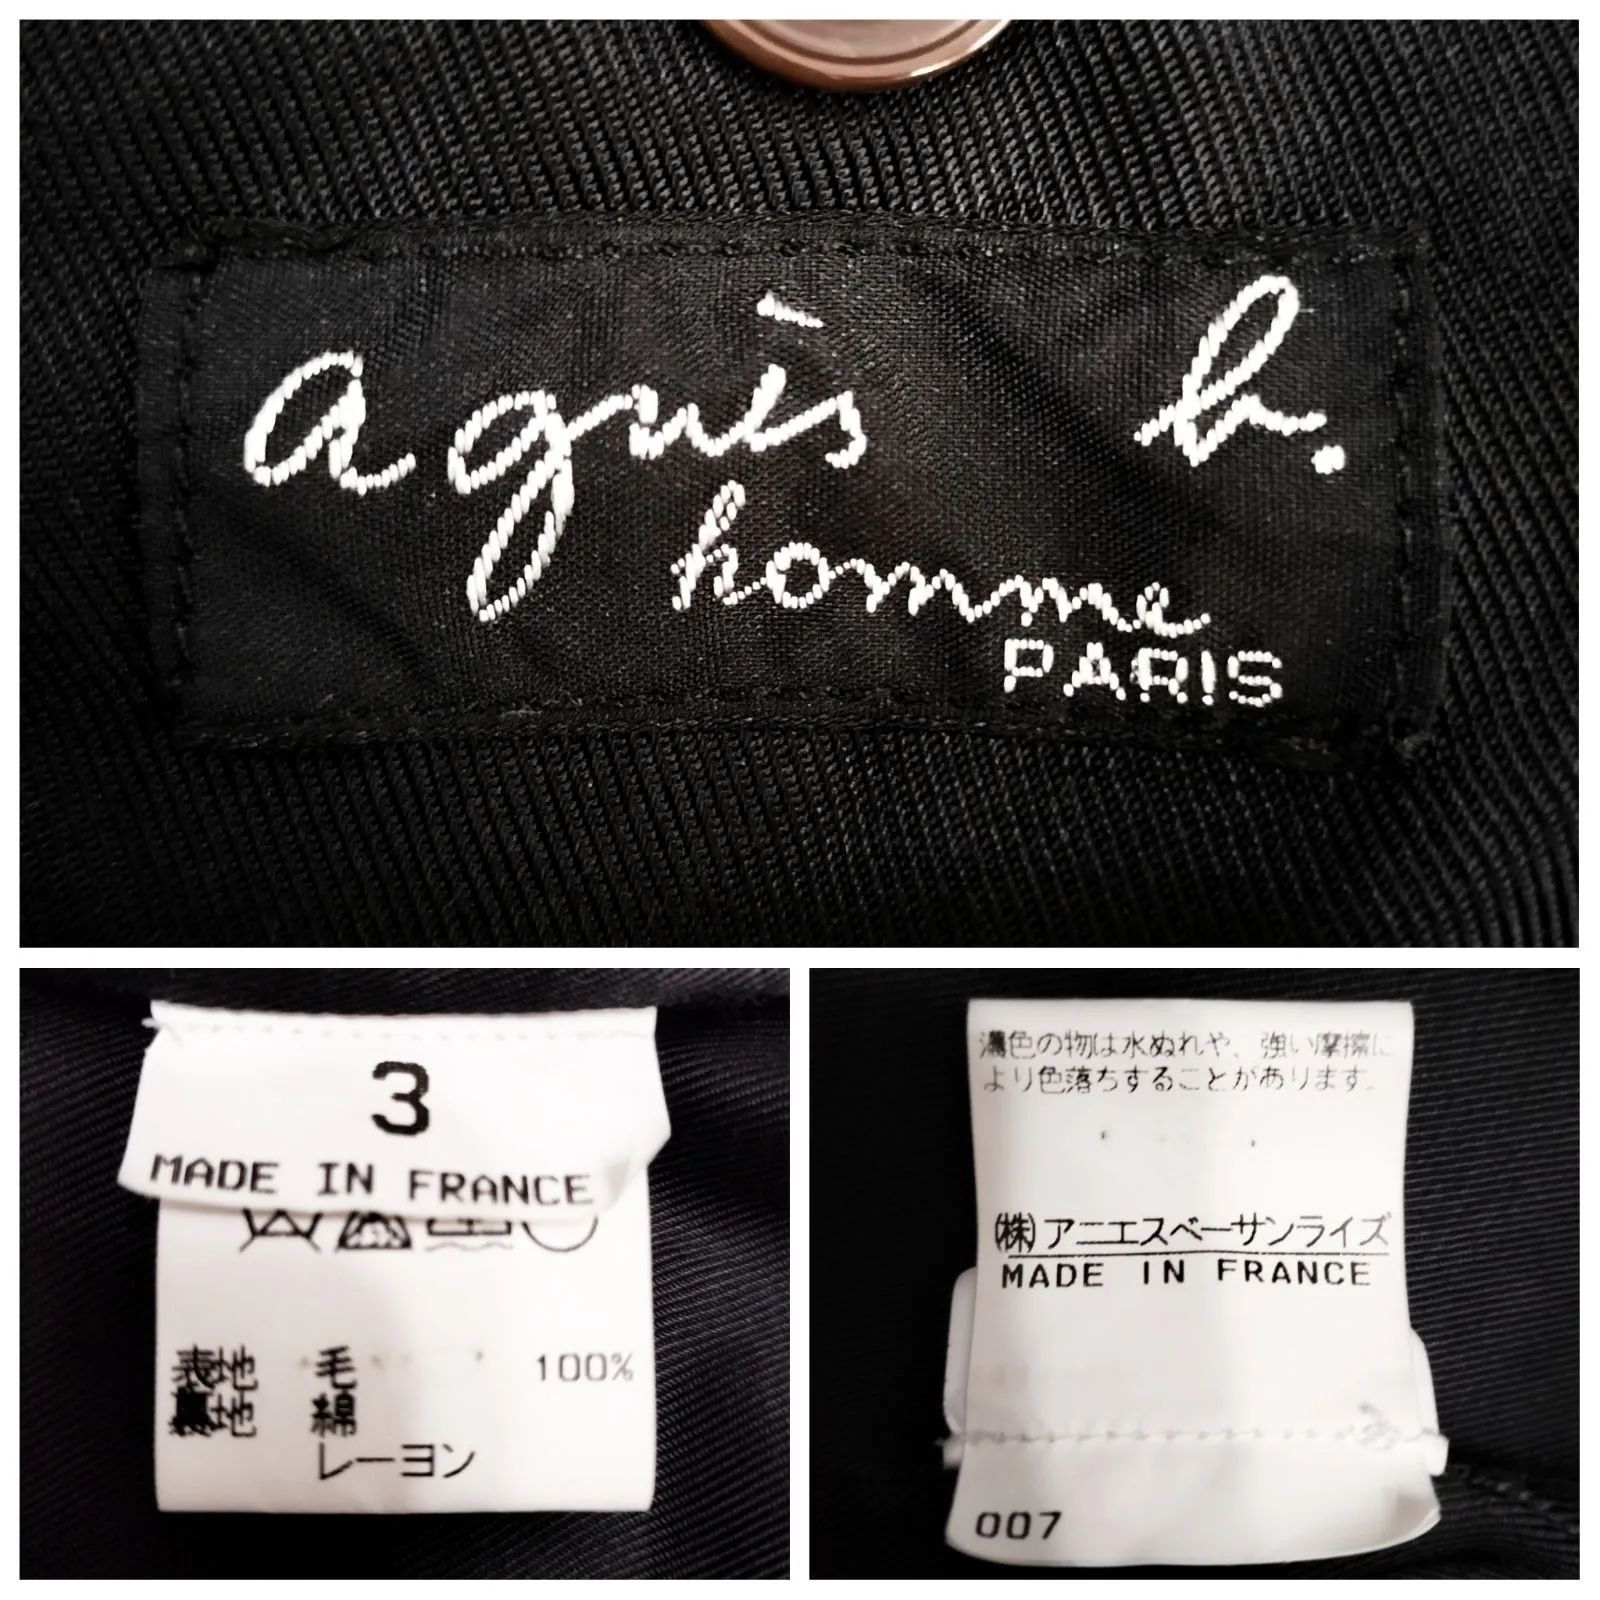 【高級】agnes b. homme PARIS ツイード ジャケット コート